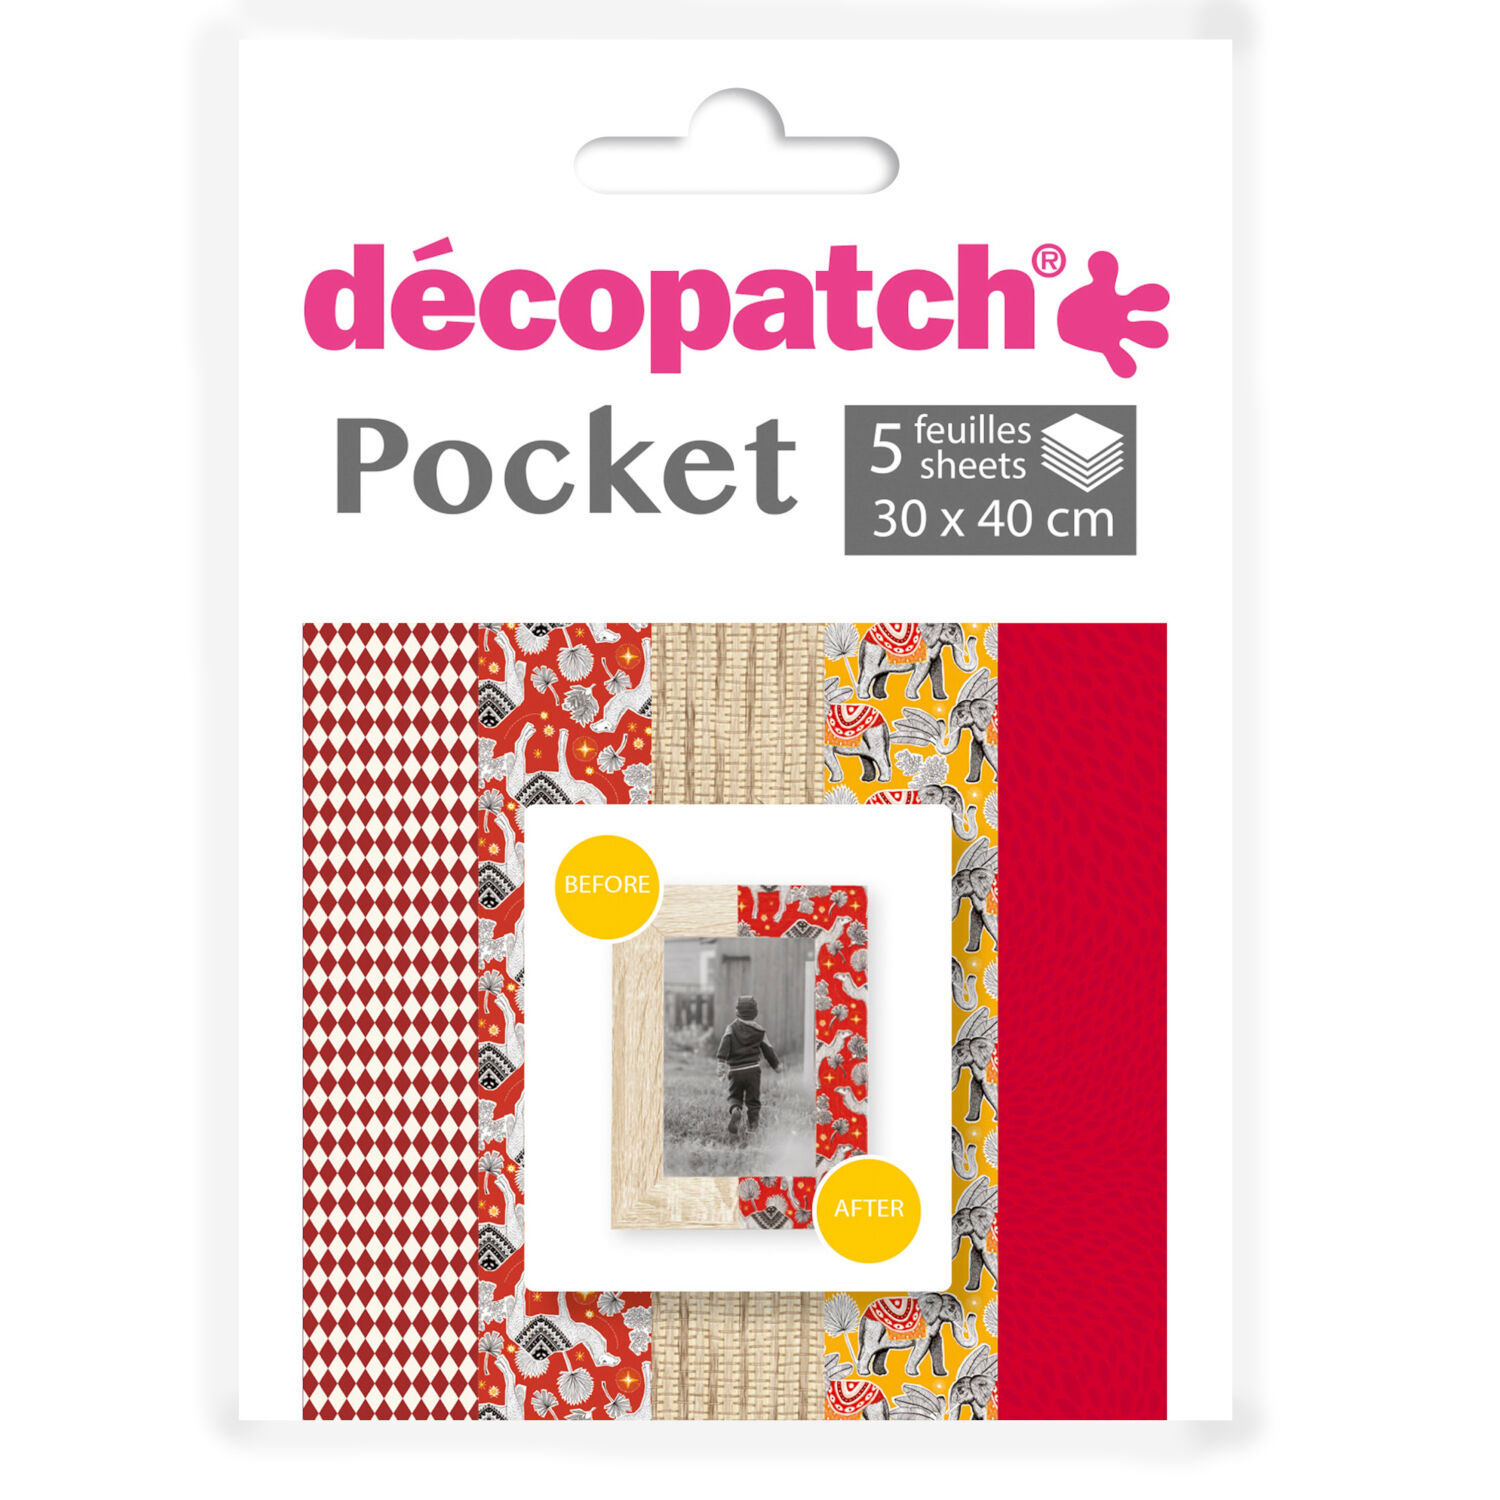 NEU Decoupage- / Decopatch-Papier Pocket-Sortierung, 5 Bogen 30 x 40 cm, Motive: 738, 826, 795, 825, 724